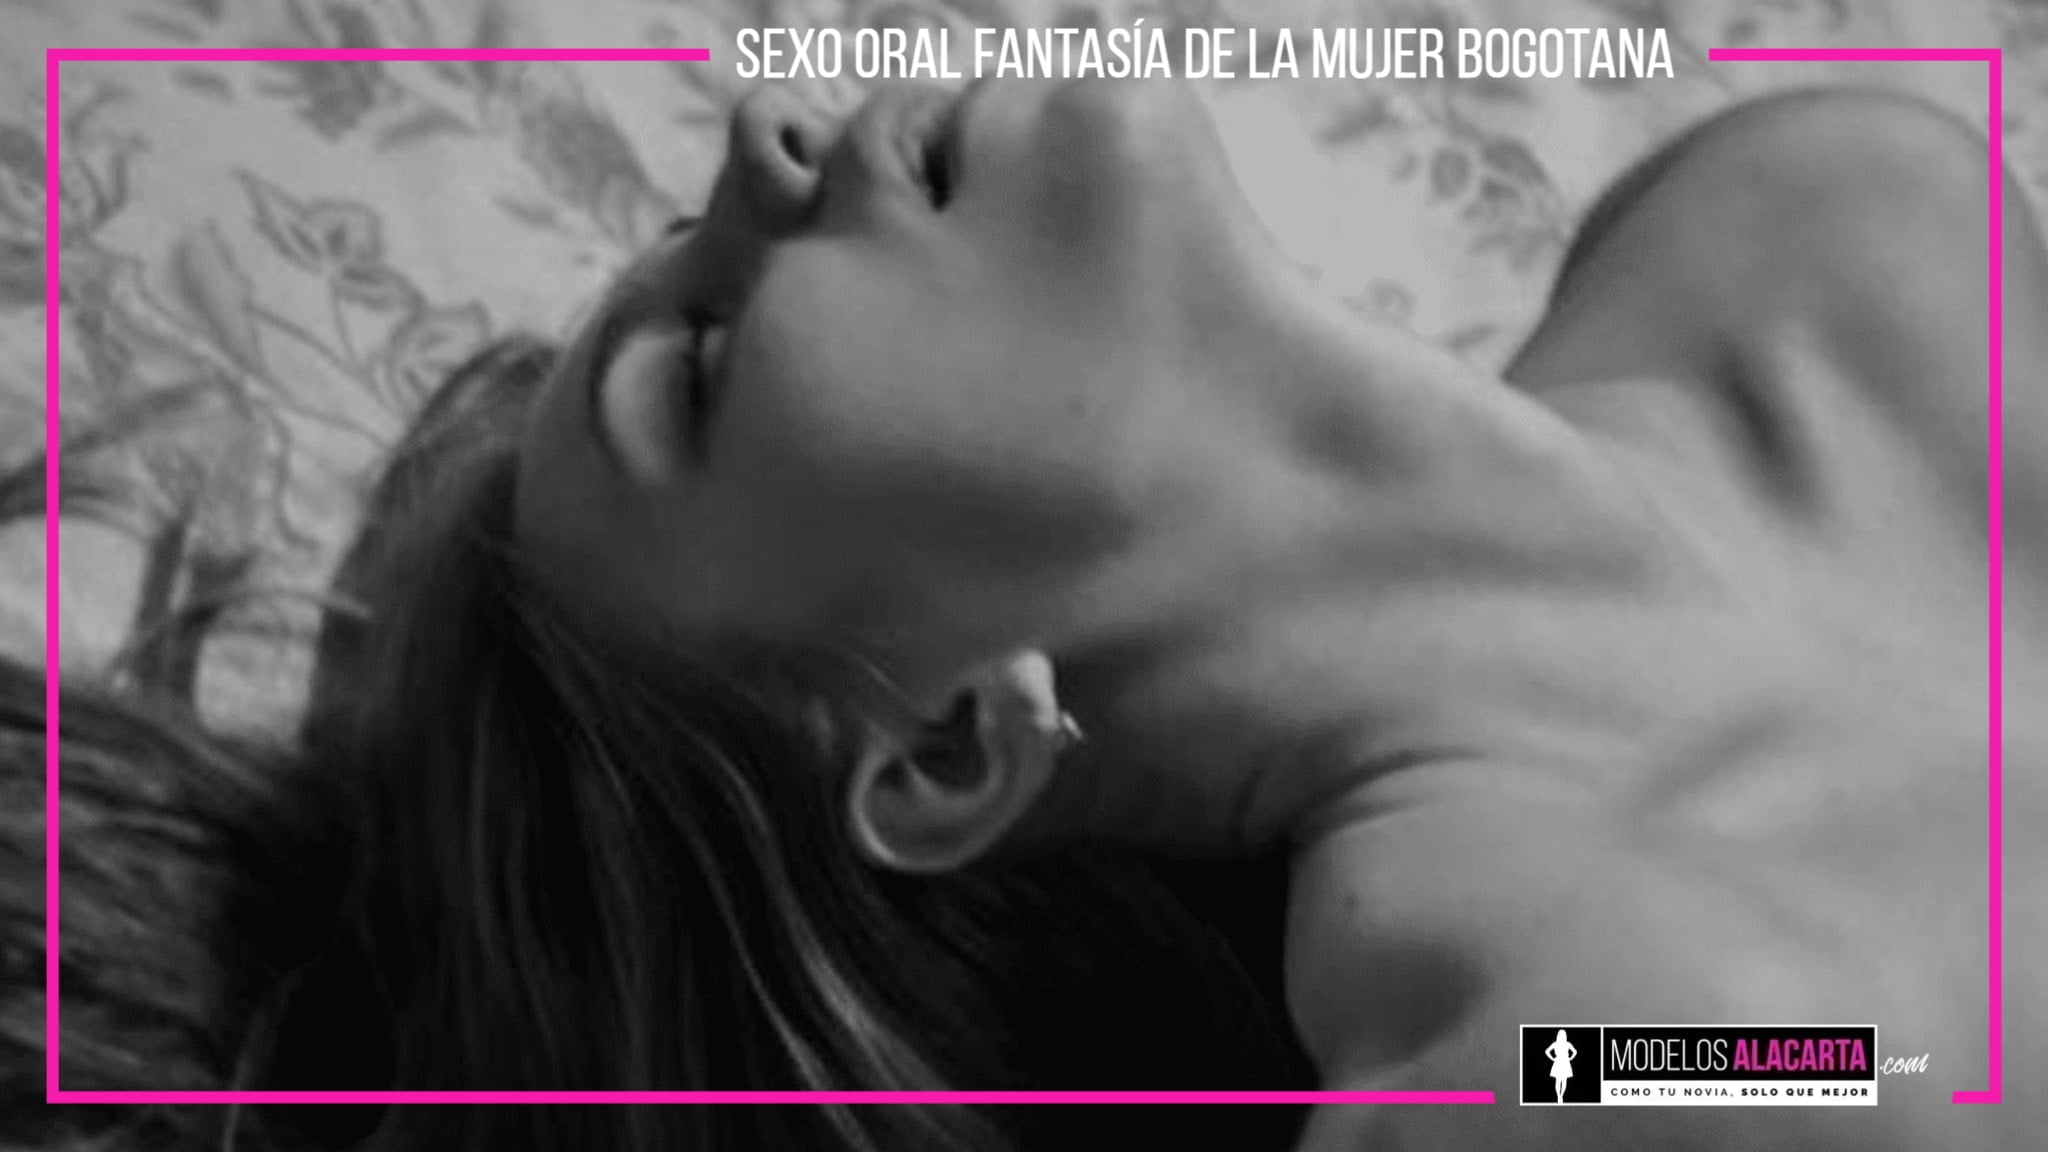 Sexo oral fantasía de la mujer Bogotana Prepagos en bogotá